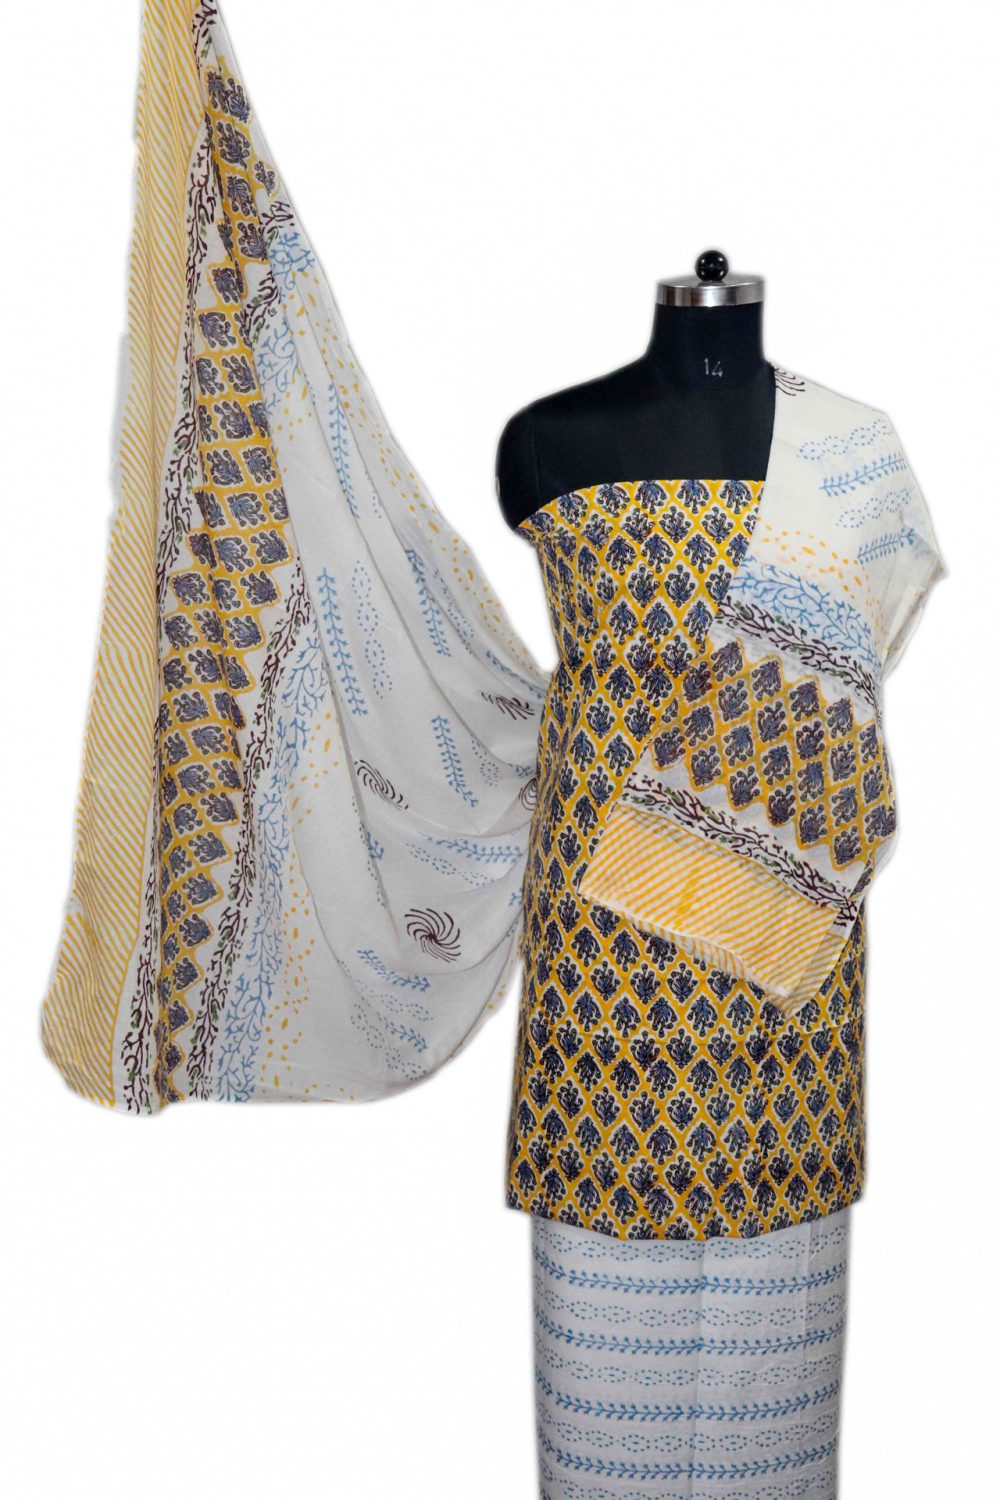 Floral Block Print Salwar suits with Mulmul Dupatta - JB320